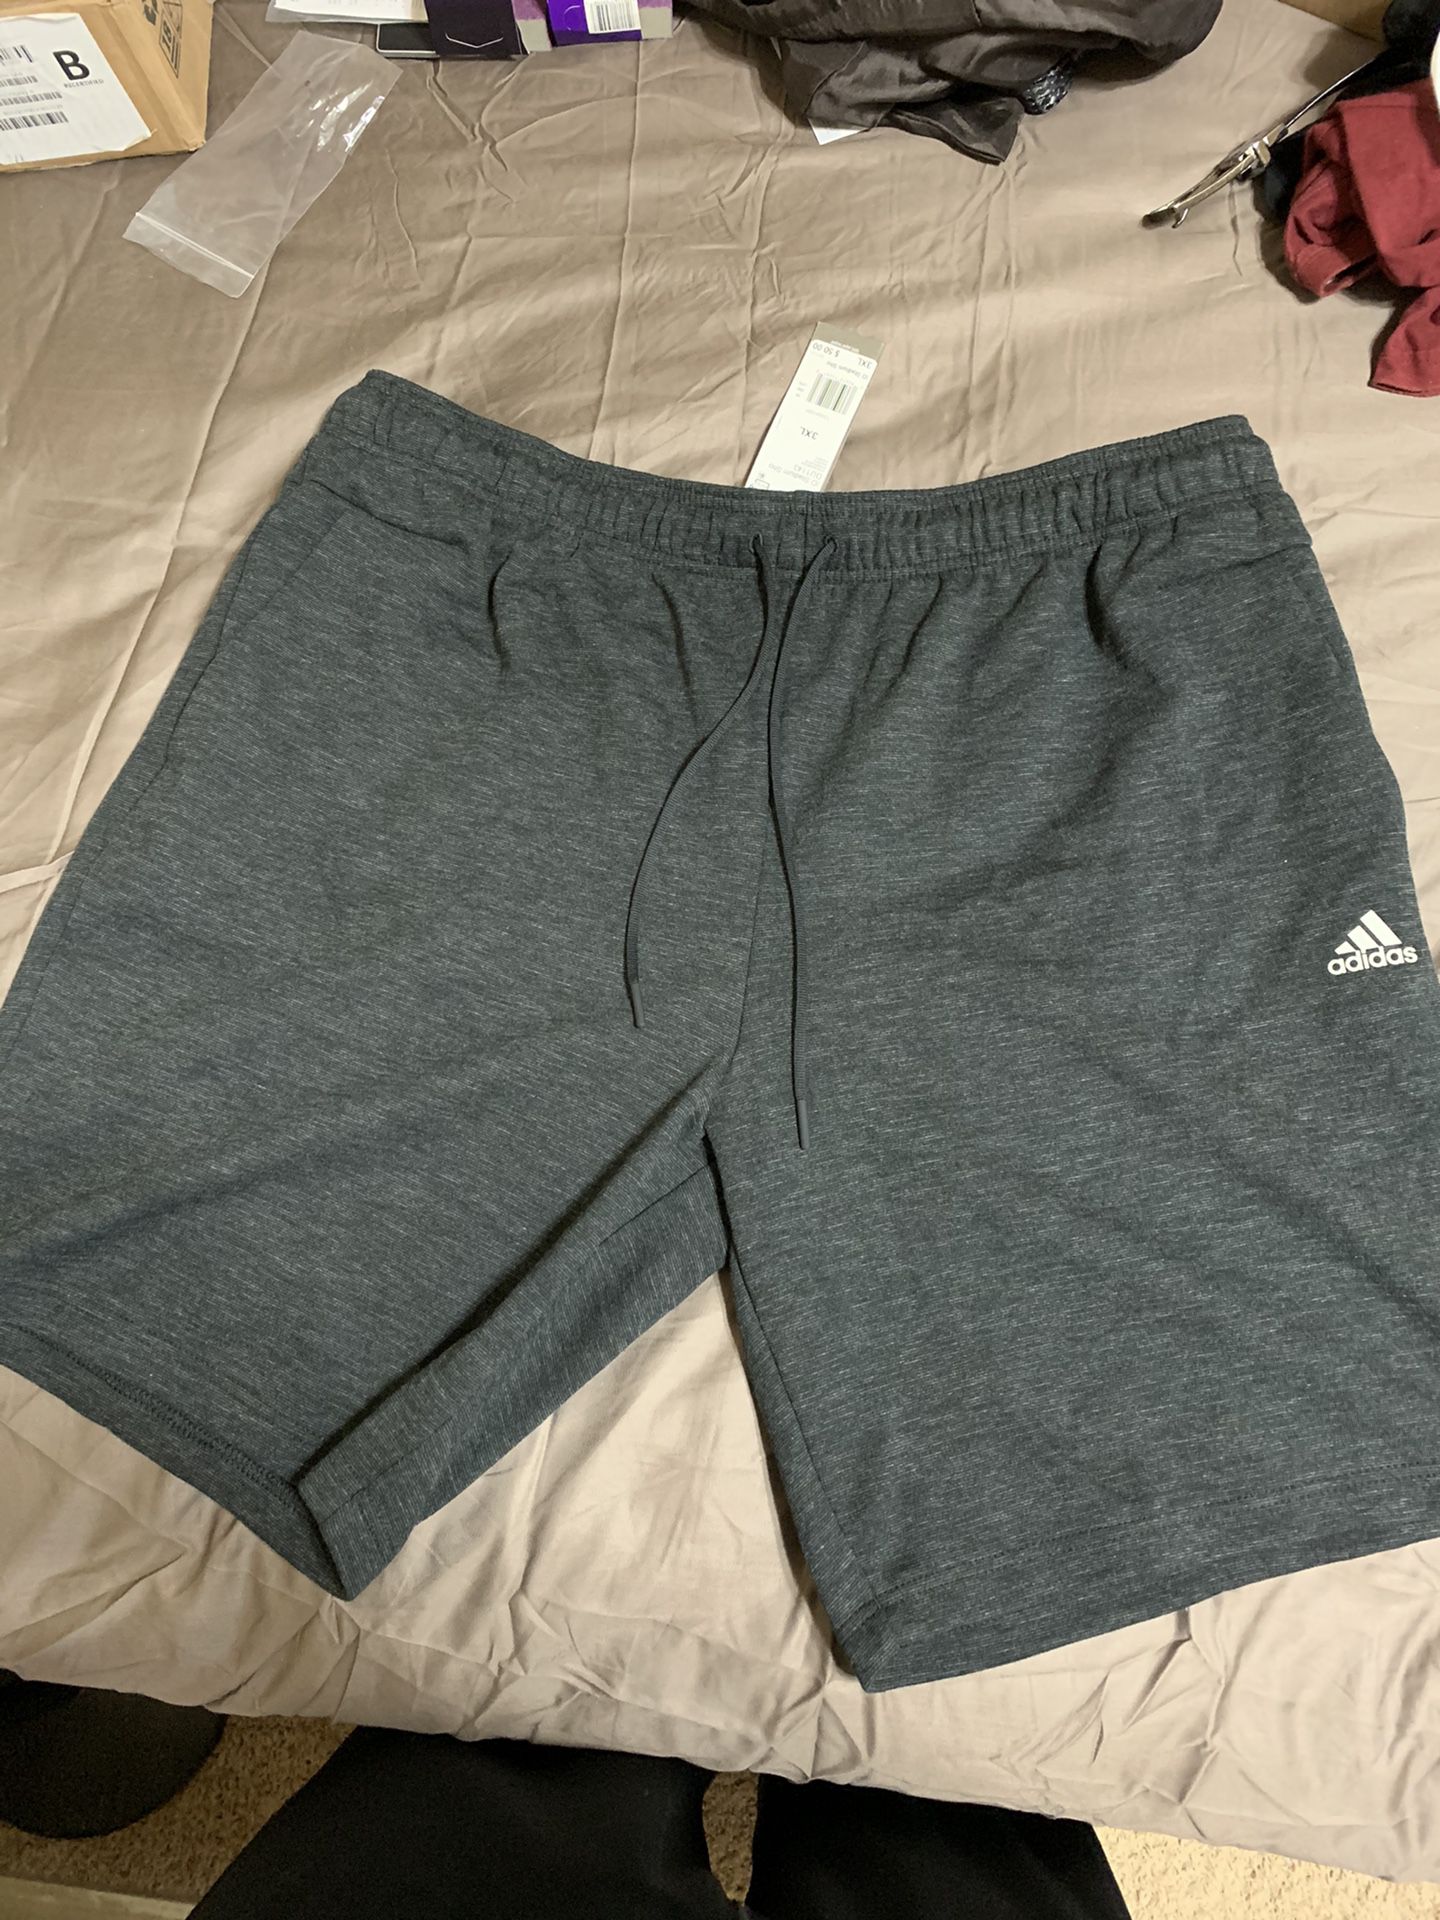 Adidas Shorts Men's 3XL (Black/Gray)